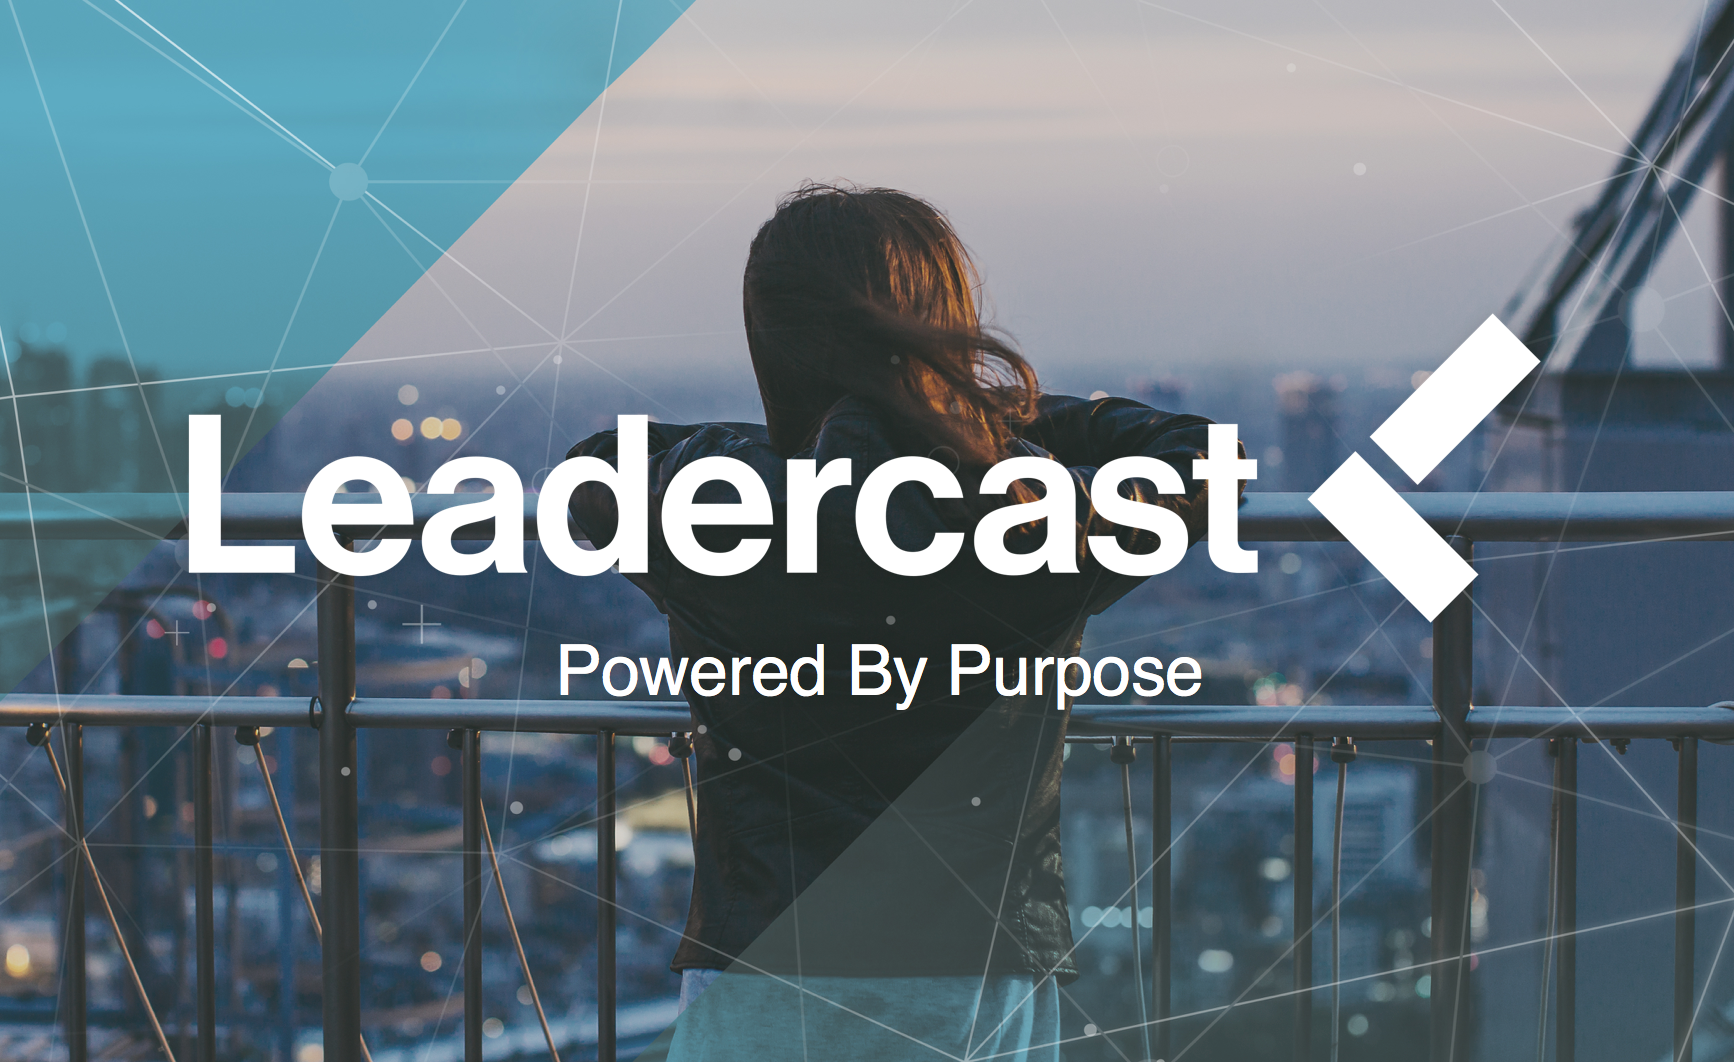 Leadercast 2017 Update